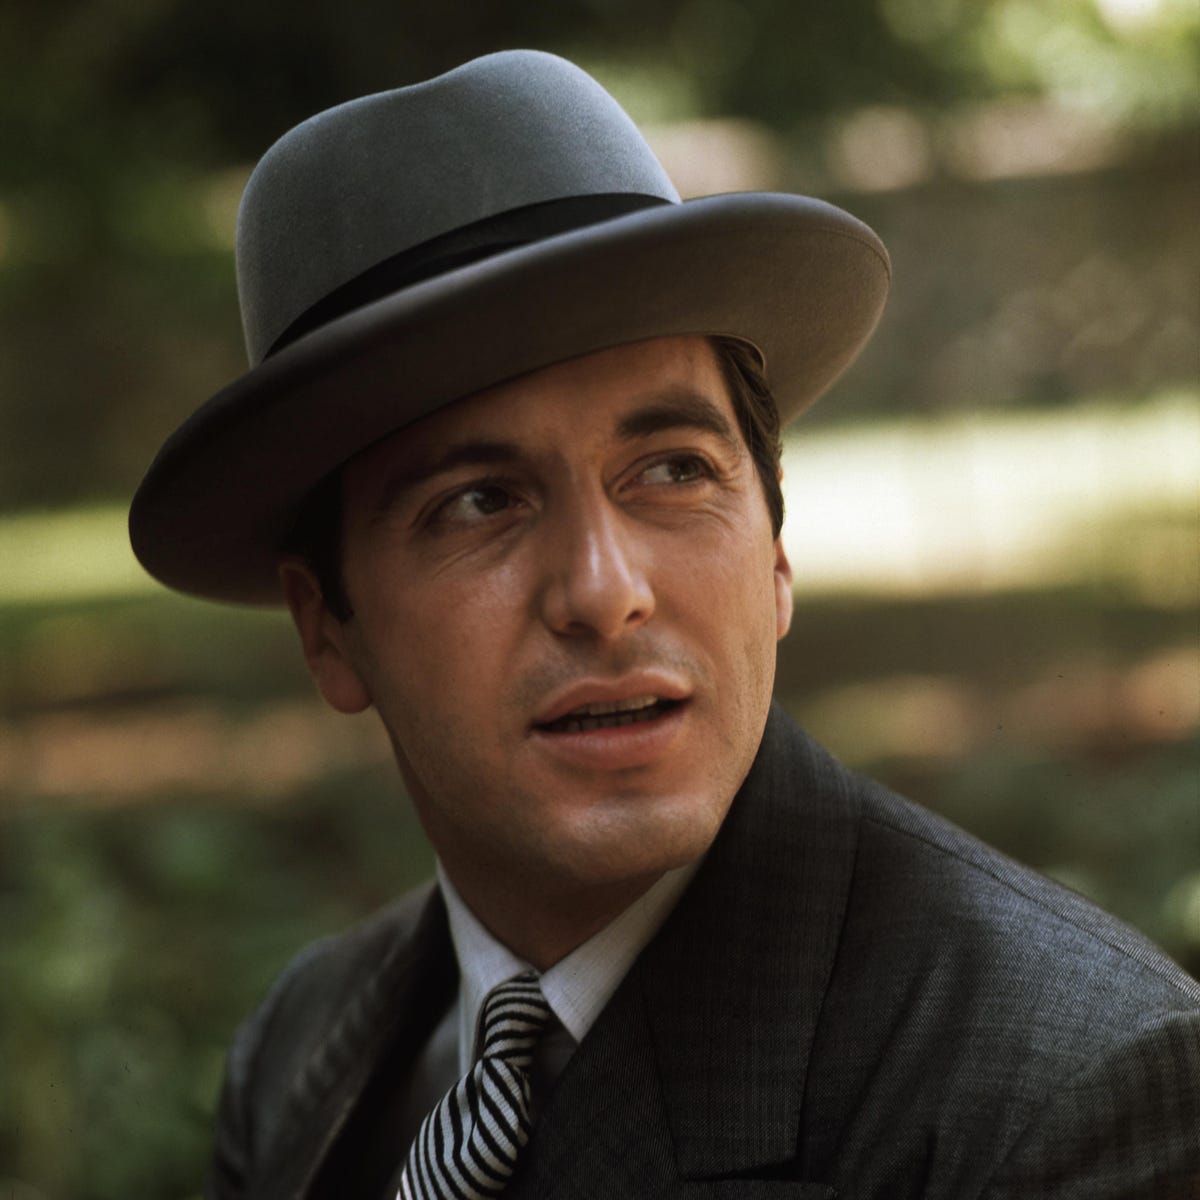 A portrait photo of Michael Corleone